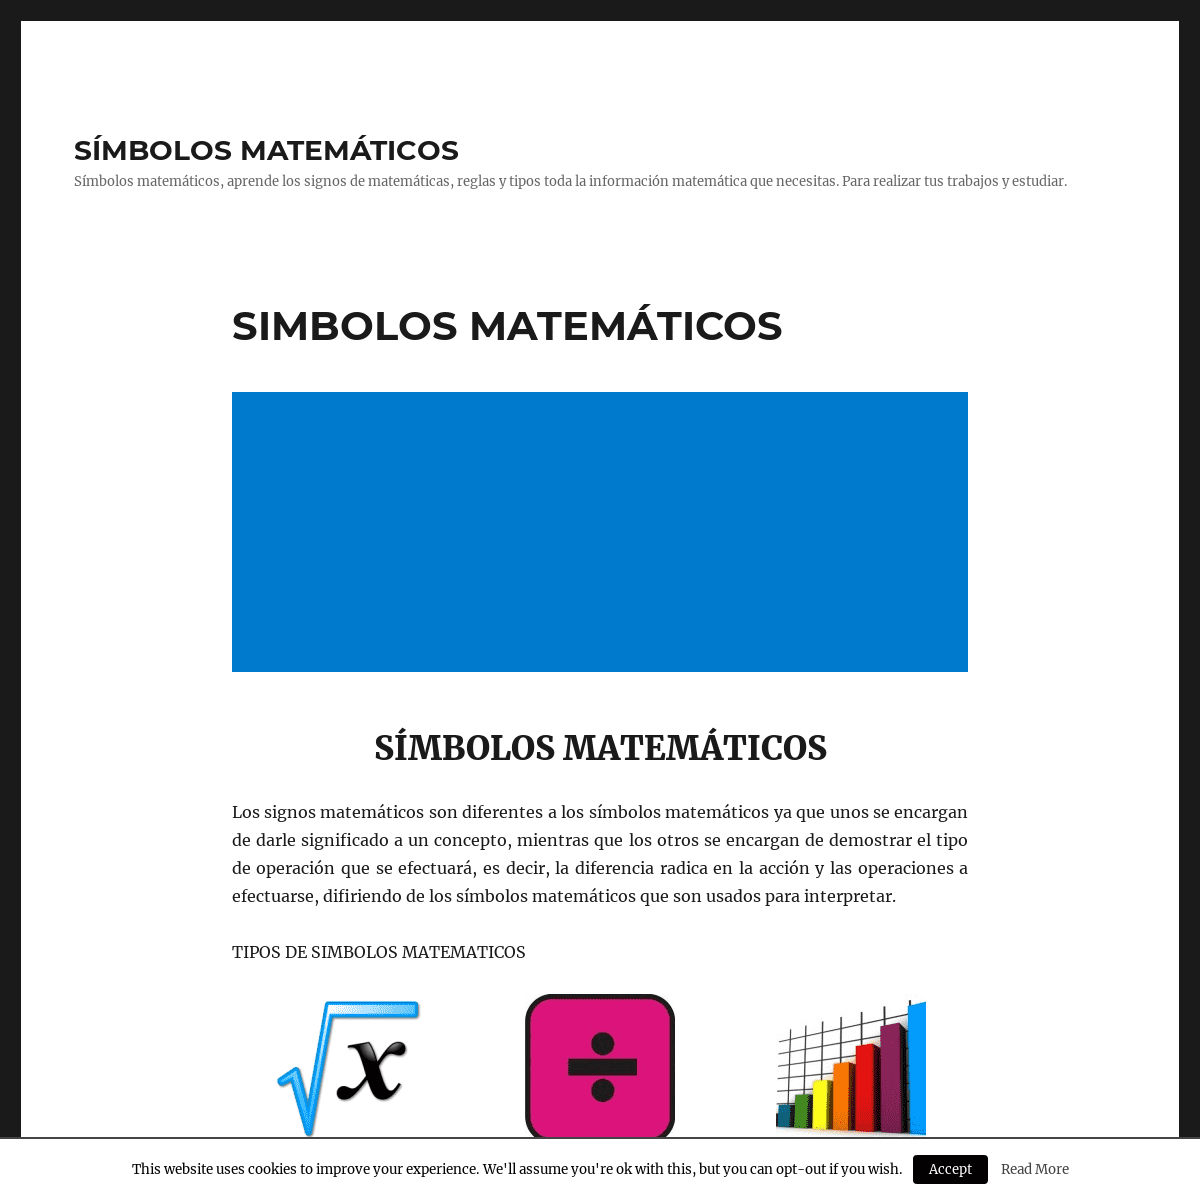 A complete backup of simbolosmatematicos.com